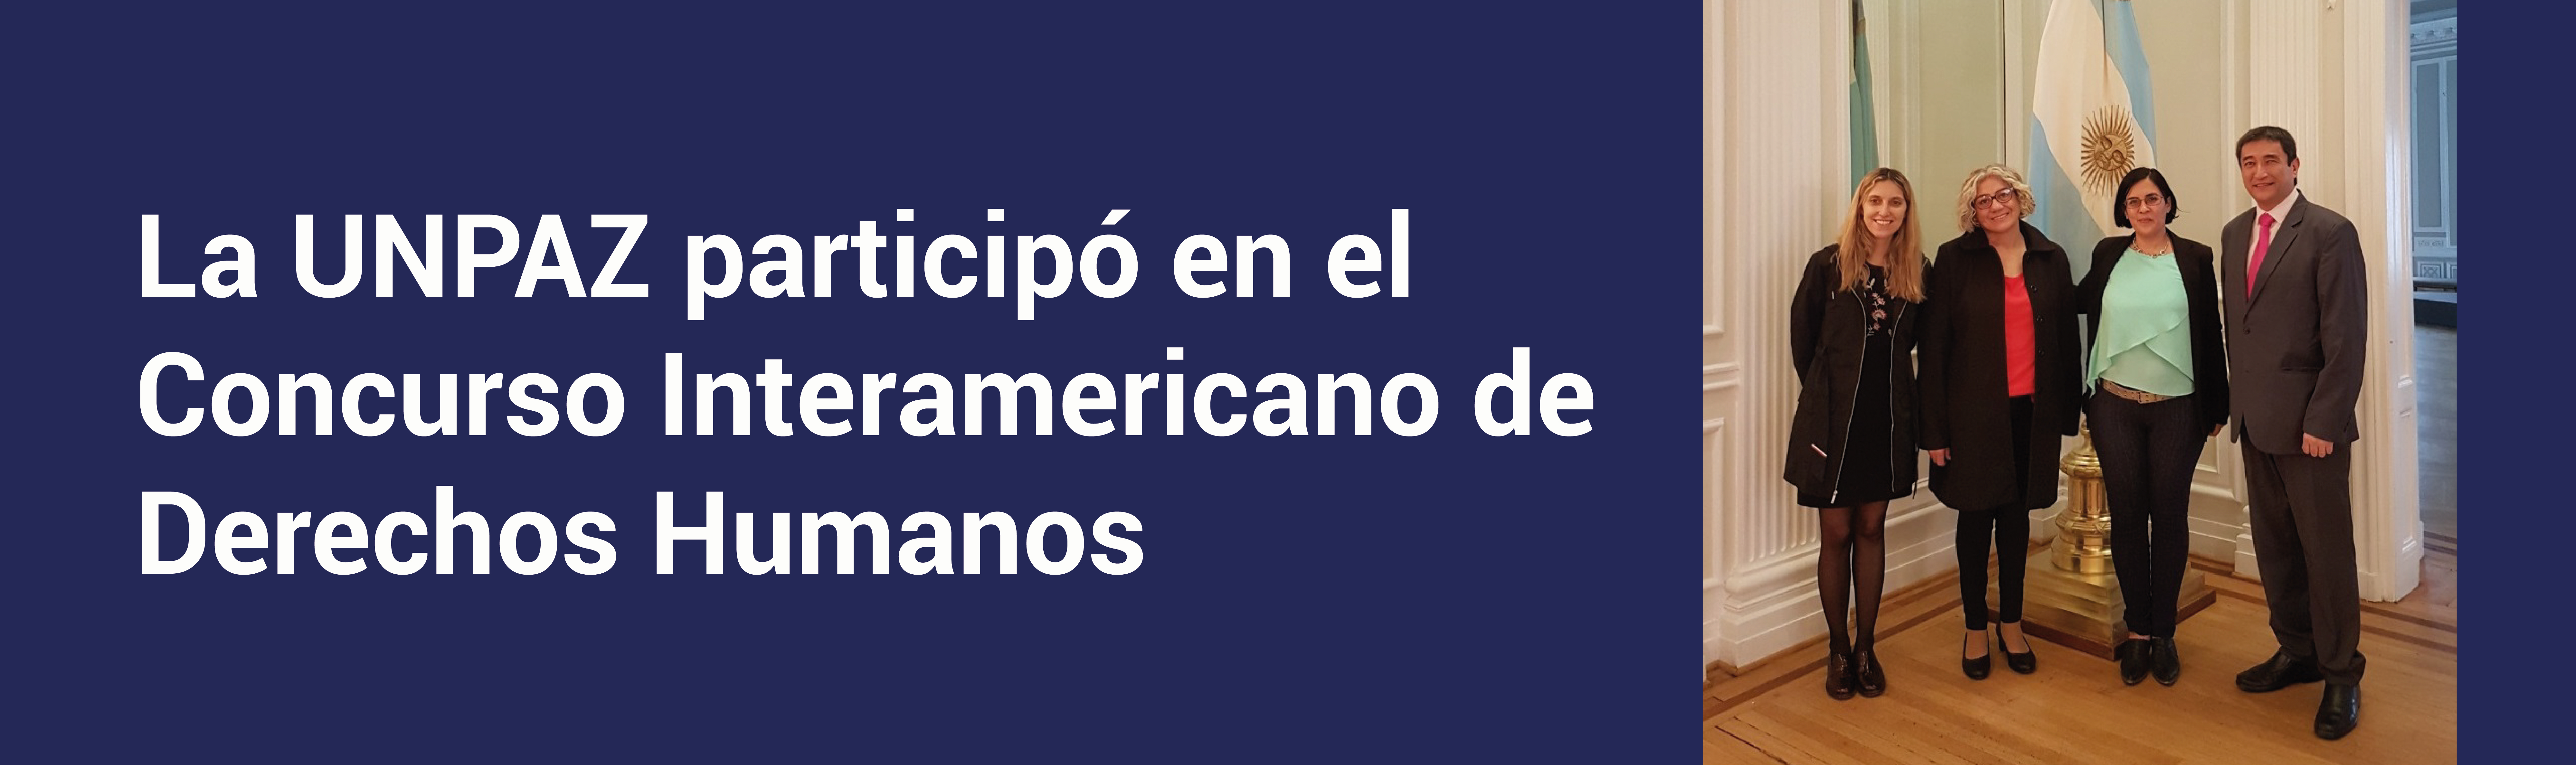 La UNPAZ participó en el Concurso Interamericano de Derechos Humanos